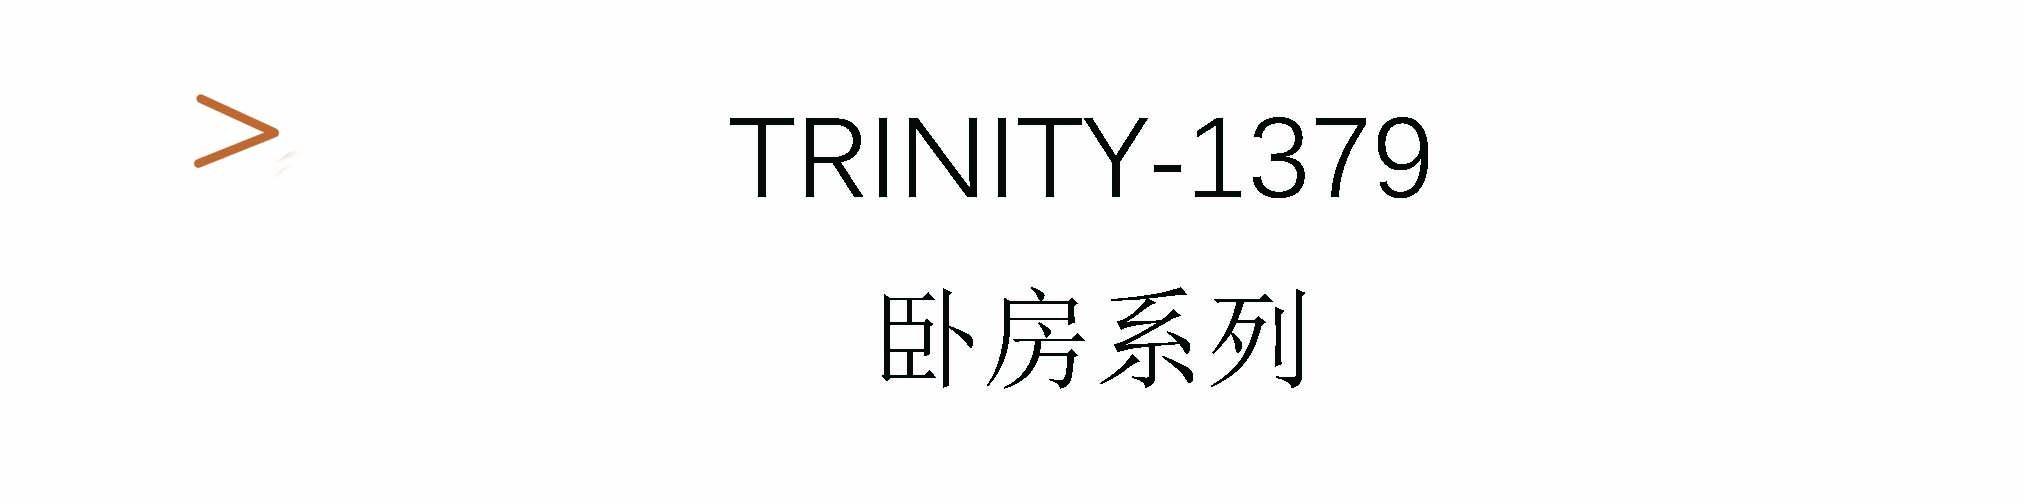 Trinity-1379